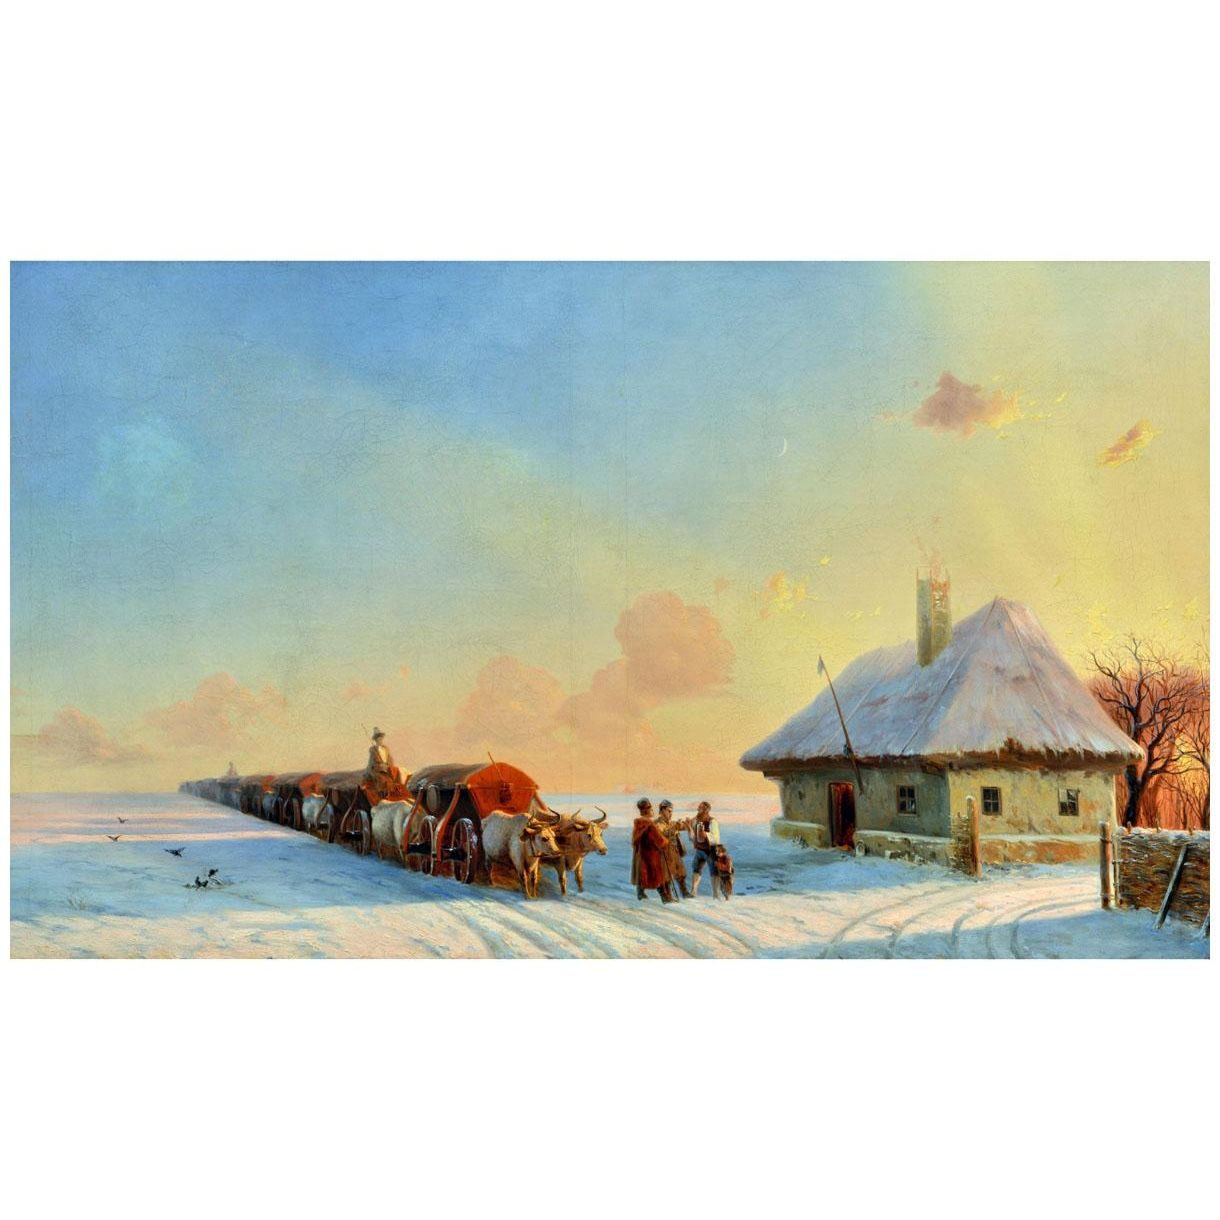 Иван Айвазовский. Чумаки в Малороссии. 1860. Русский музей